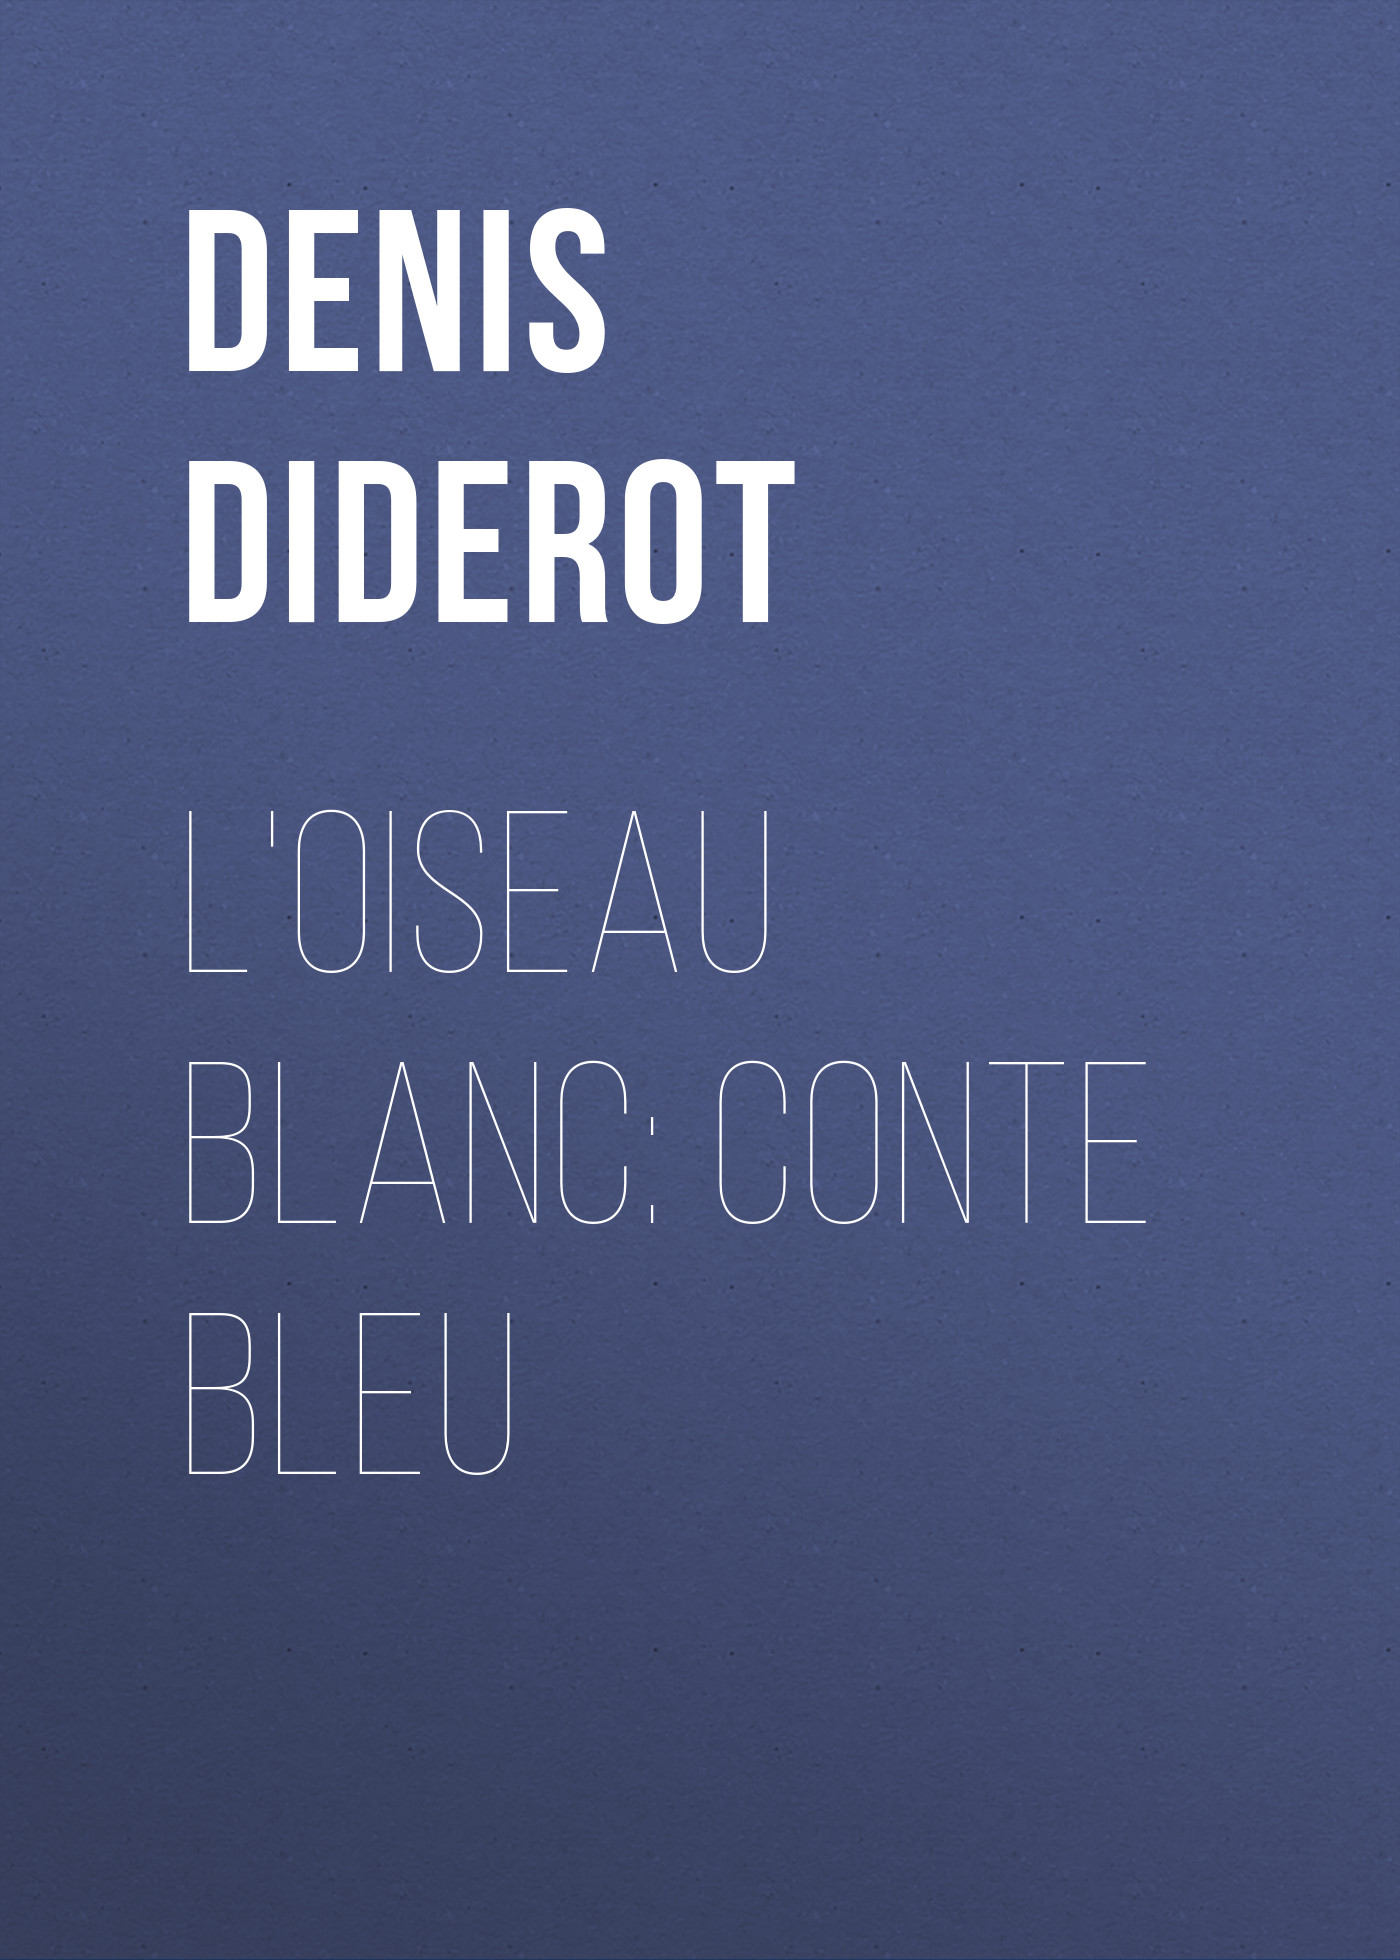 Книга L'oiseau blanc: conte bleu из серии , созданная Denis Diderot, может относится к жанру Литература 18 века, Зарубежная старинная литература, Зарубежная классика. Стоимость электронной книги L'oiseau blanc: conte bleu с идентификатором 24547820 составляет 0 руб.